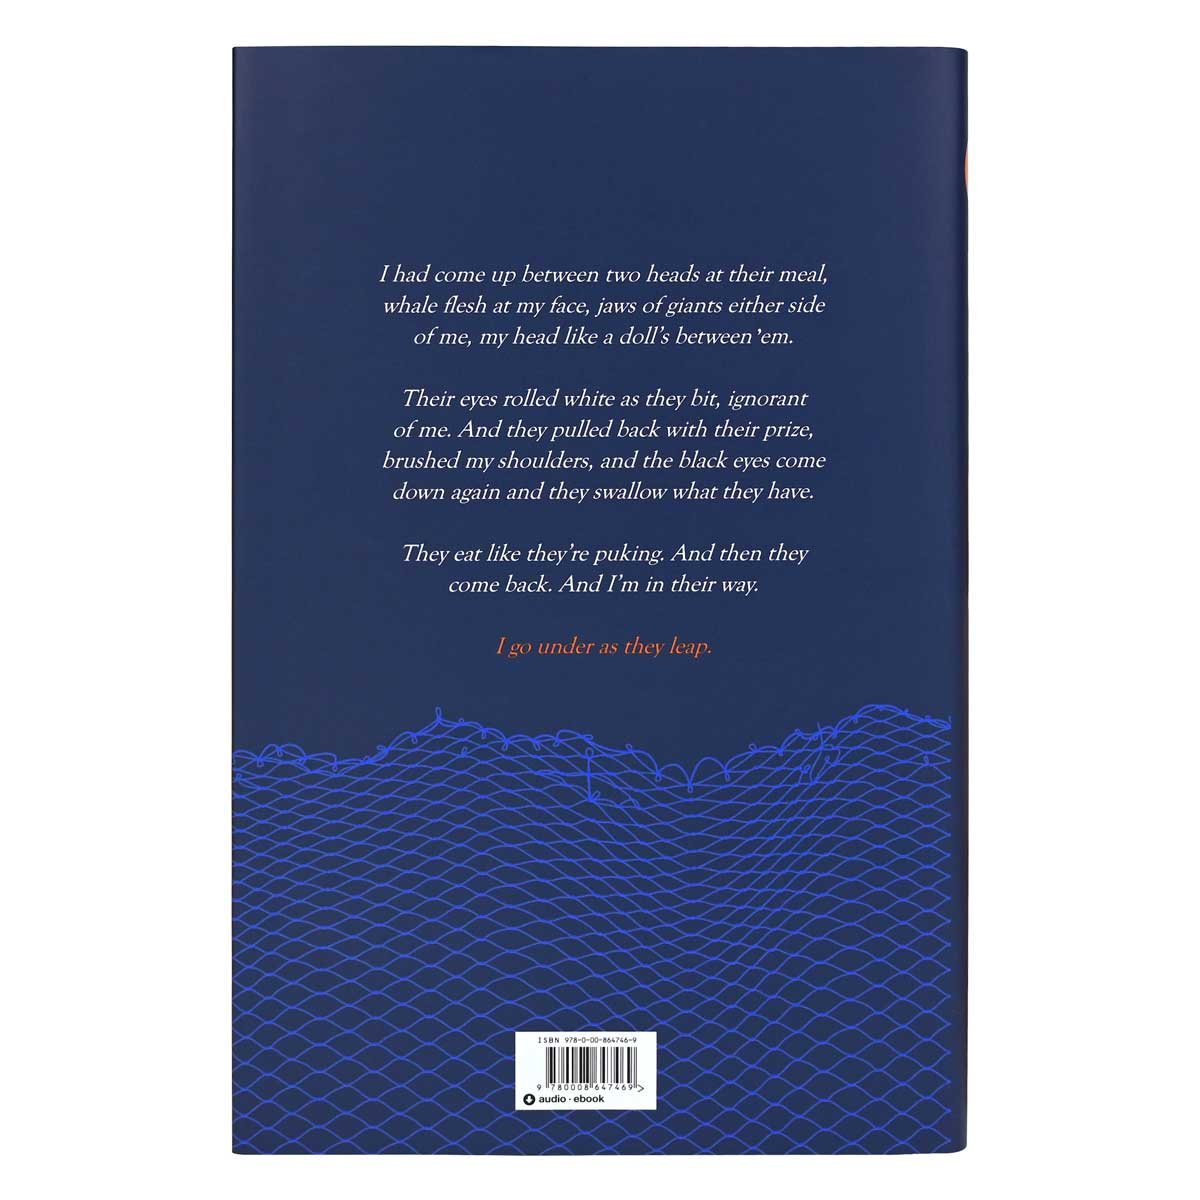 Quint by Robert Lautner | Waterstones